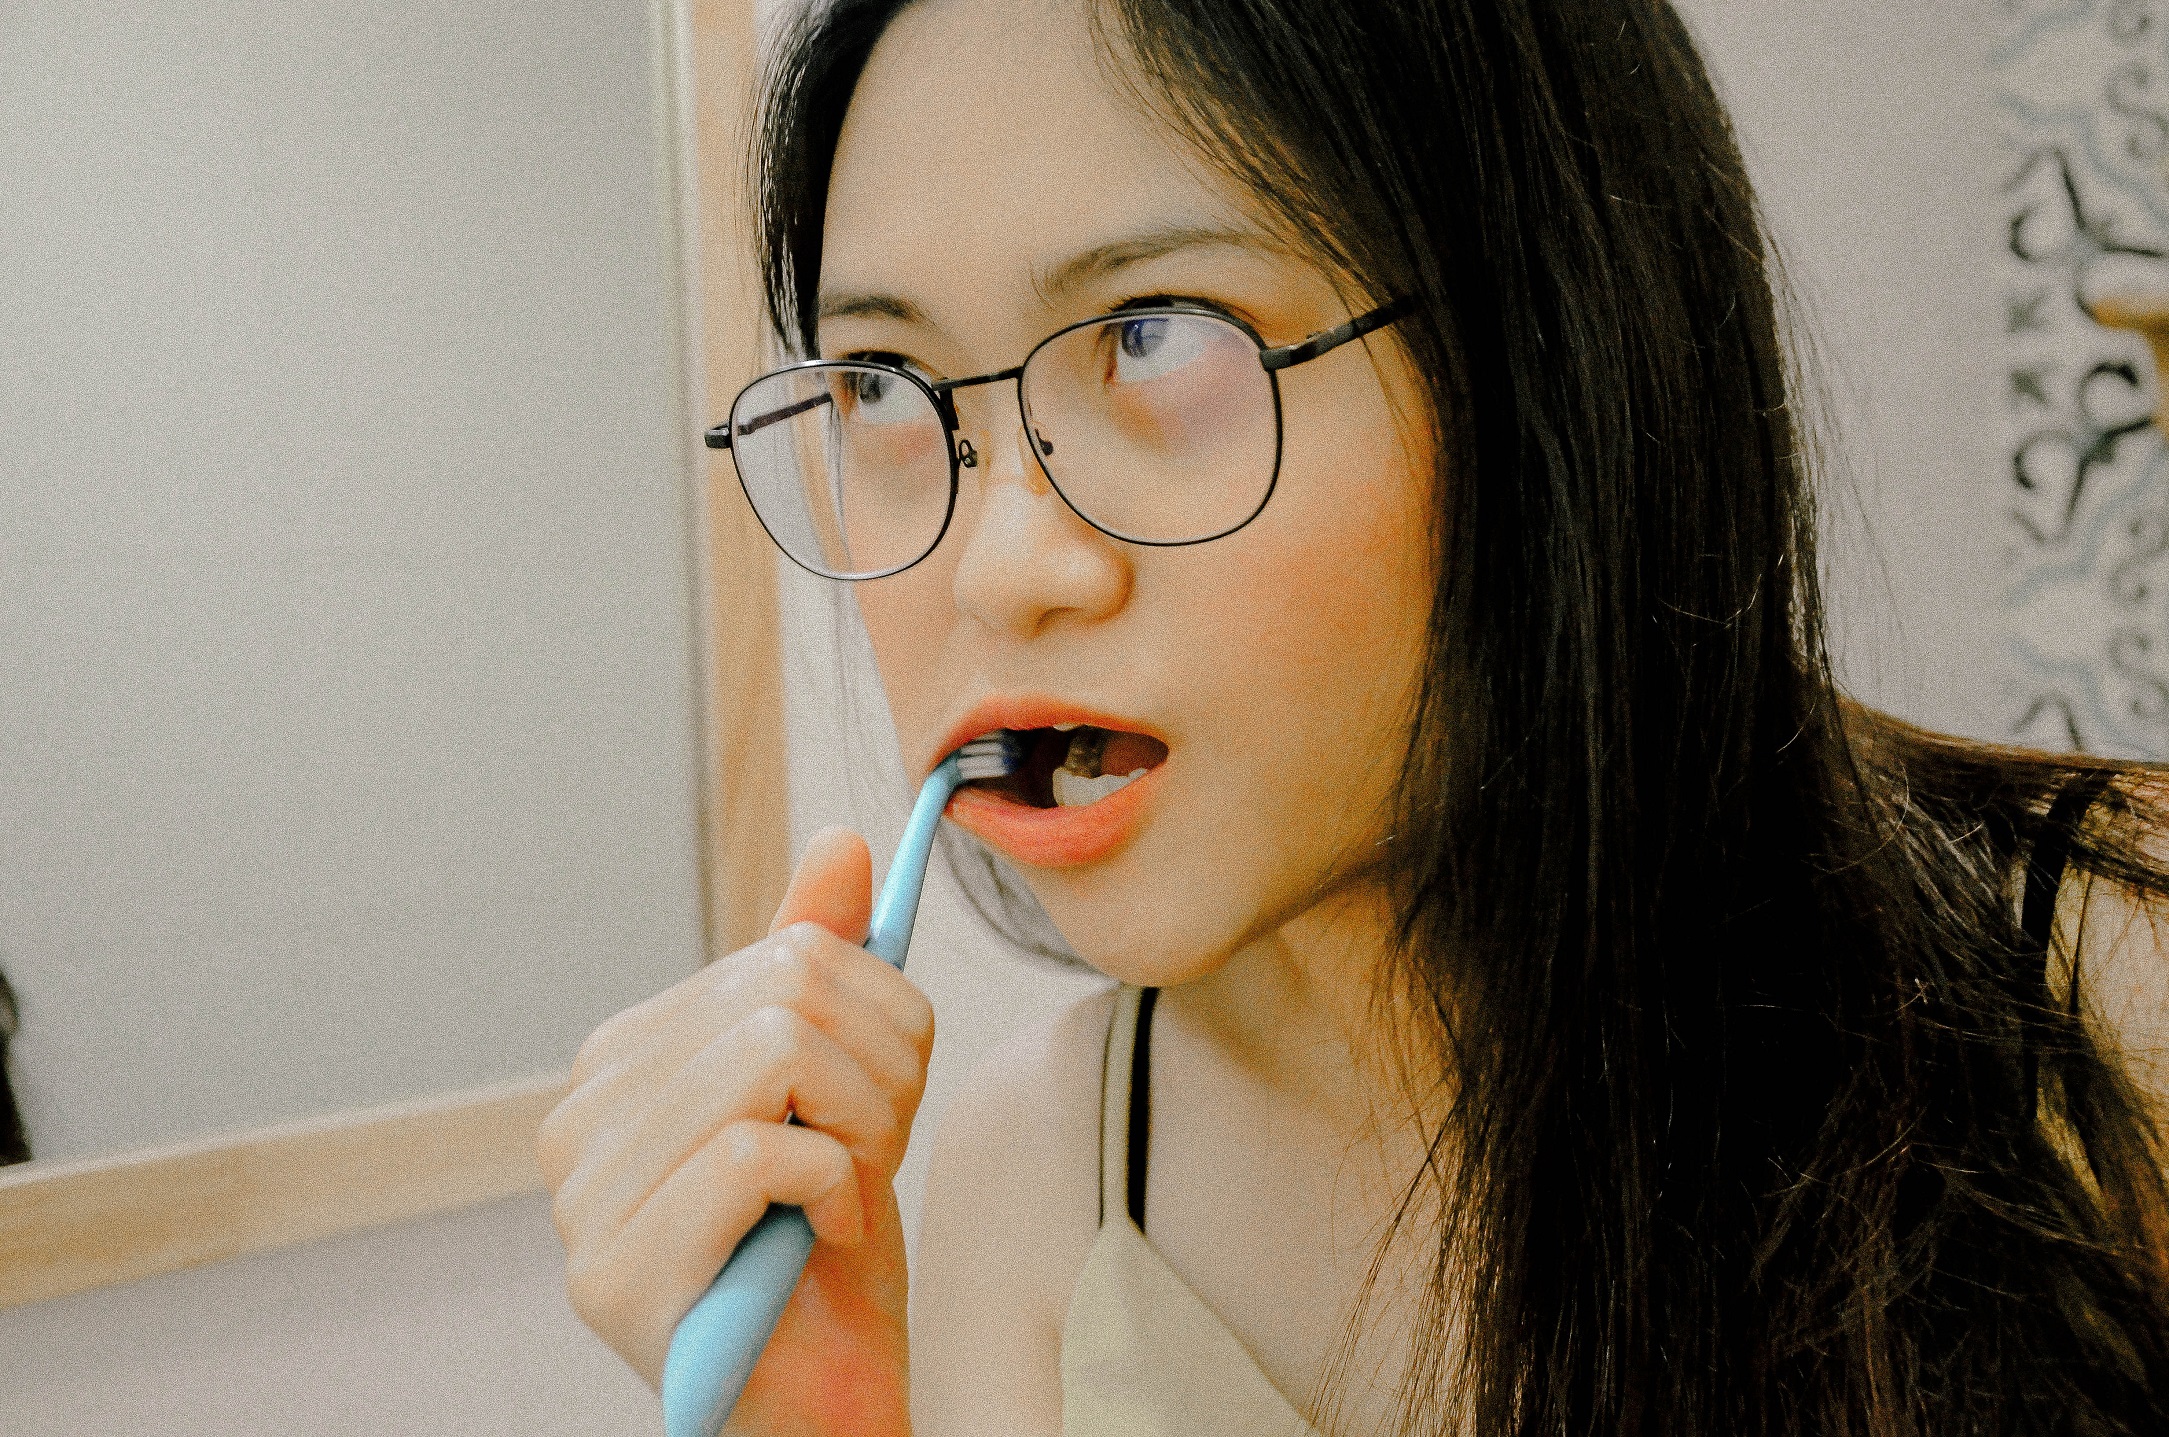 Nu bliver tandbørsten rigtig klog | Gadgets og ure | Leifshows